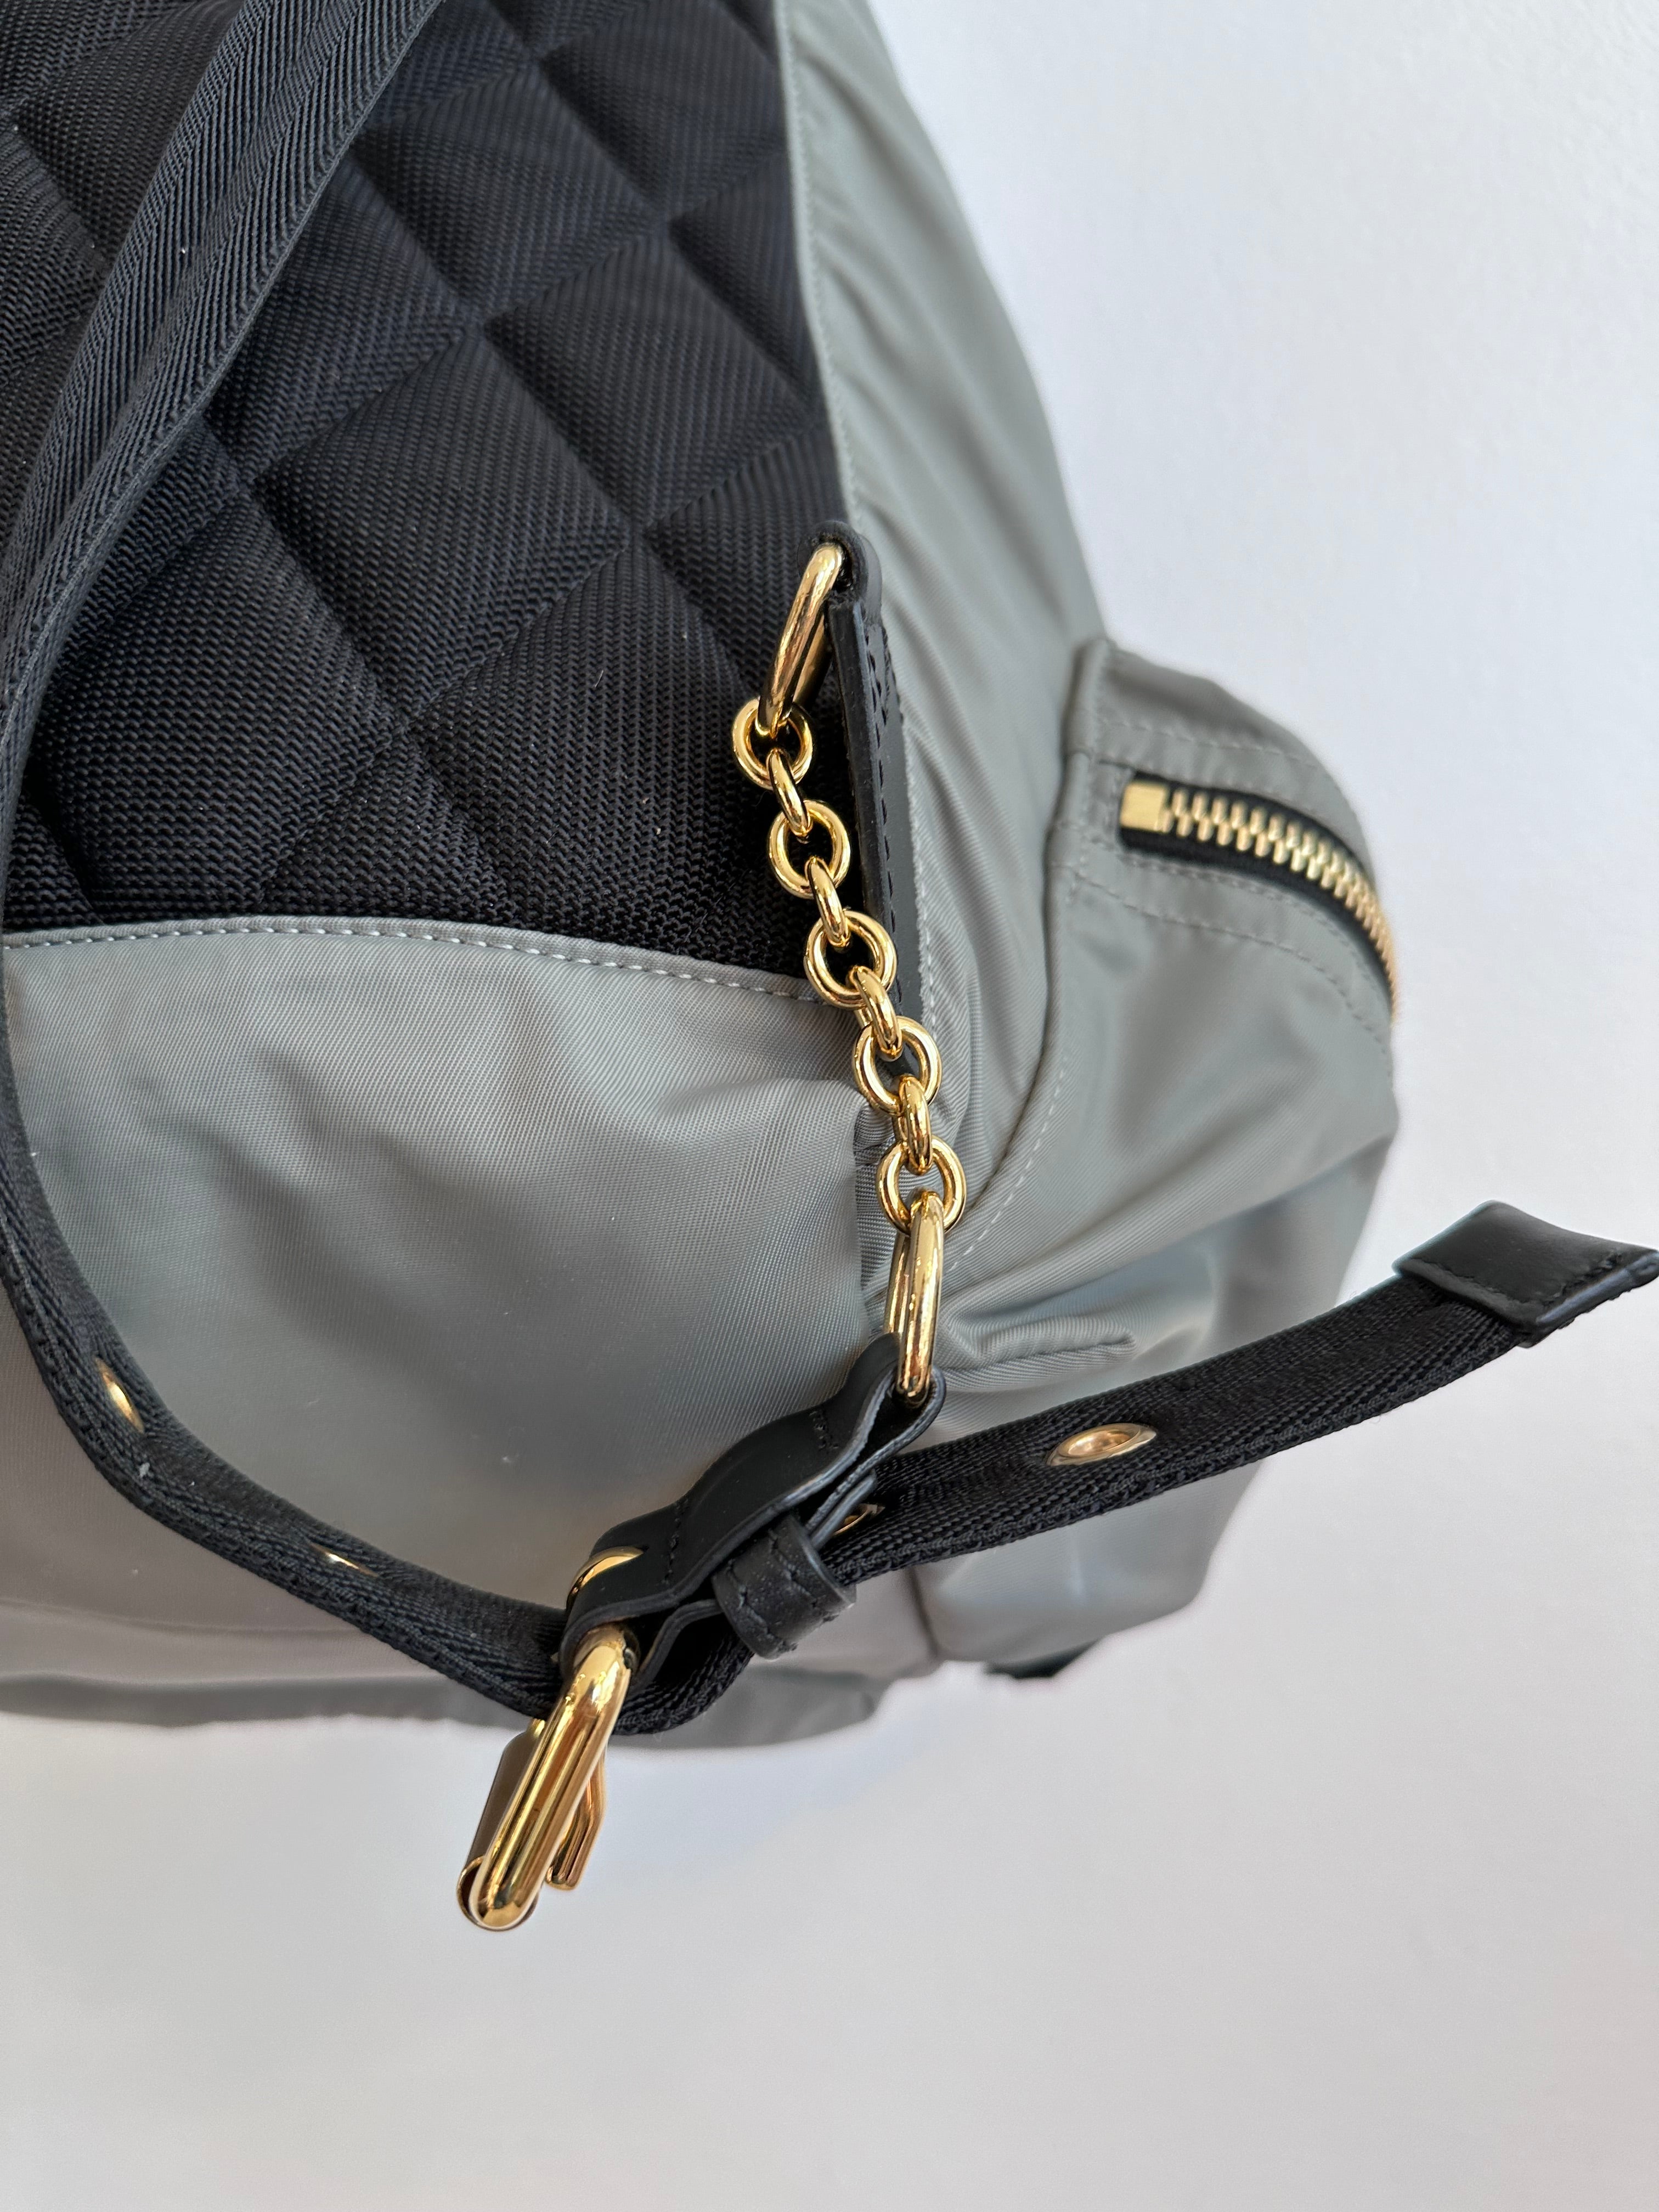 Pre-Owned BURBERRY Nylon Rucksack Backpack